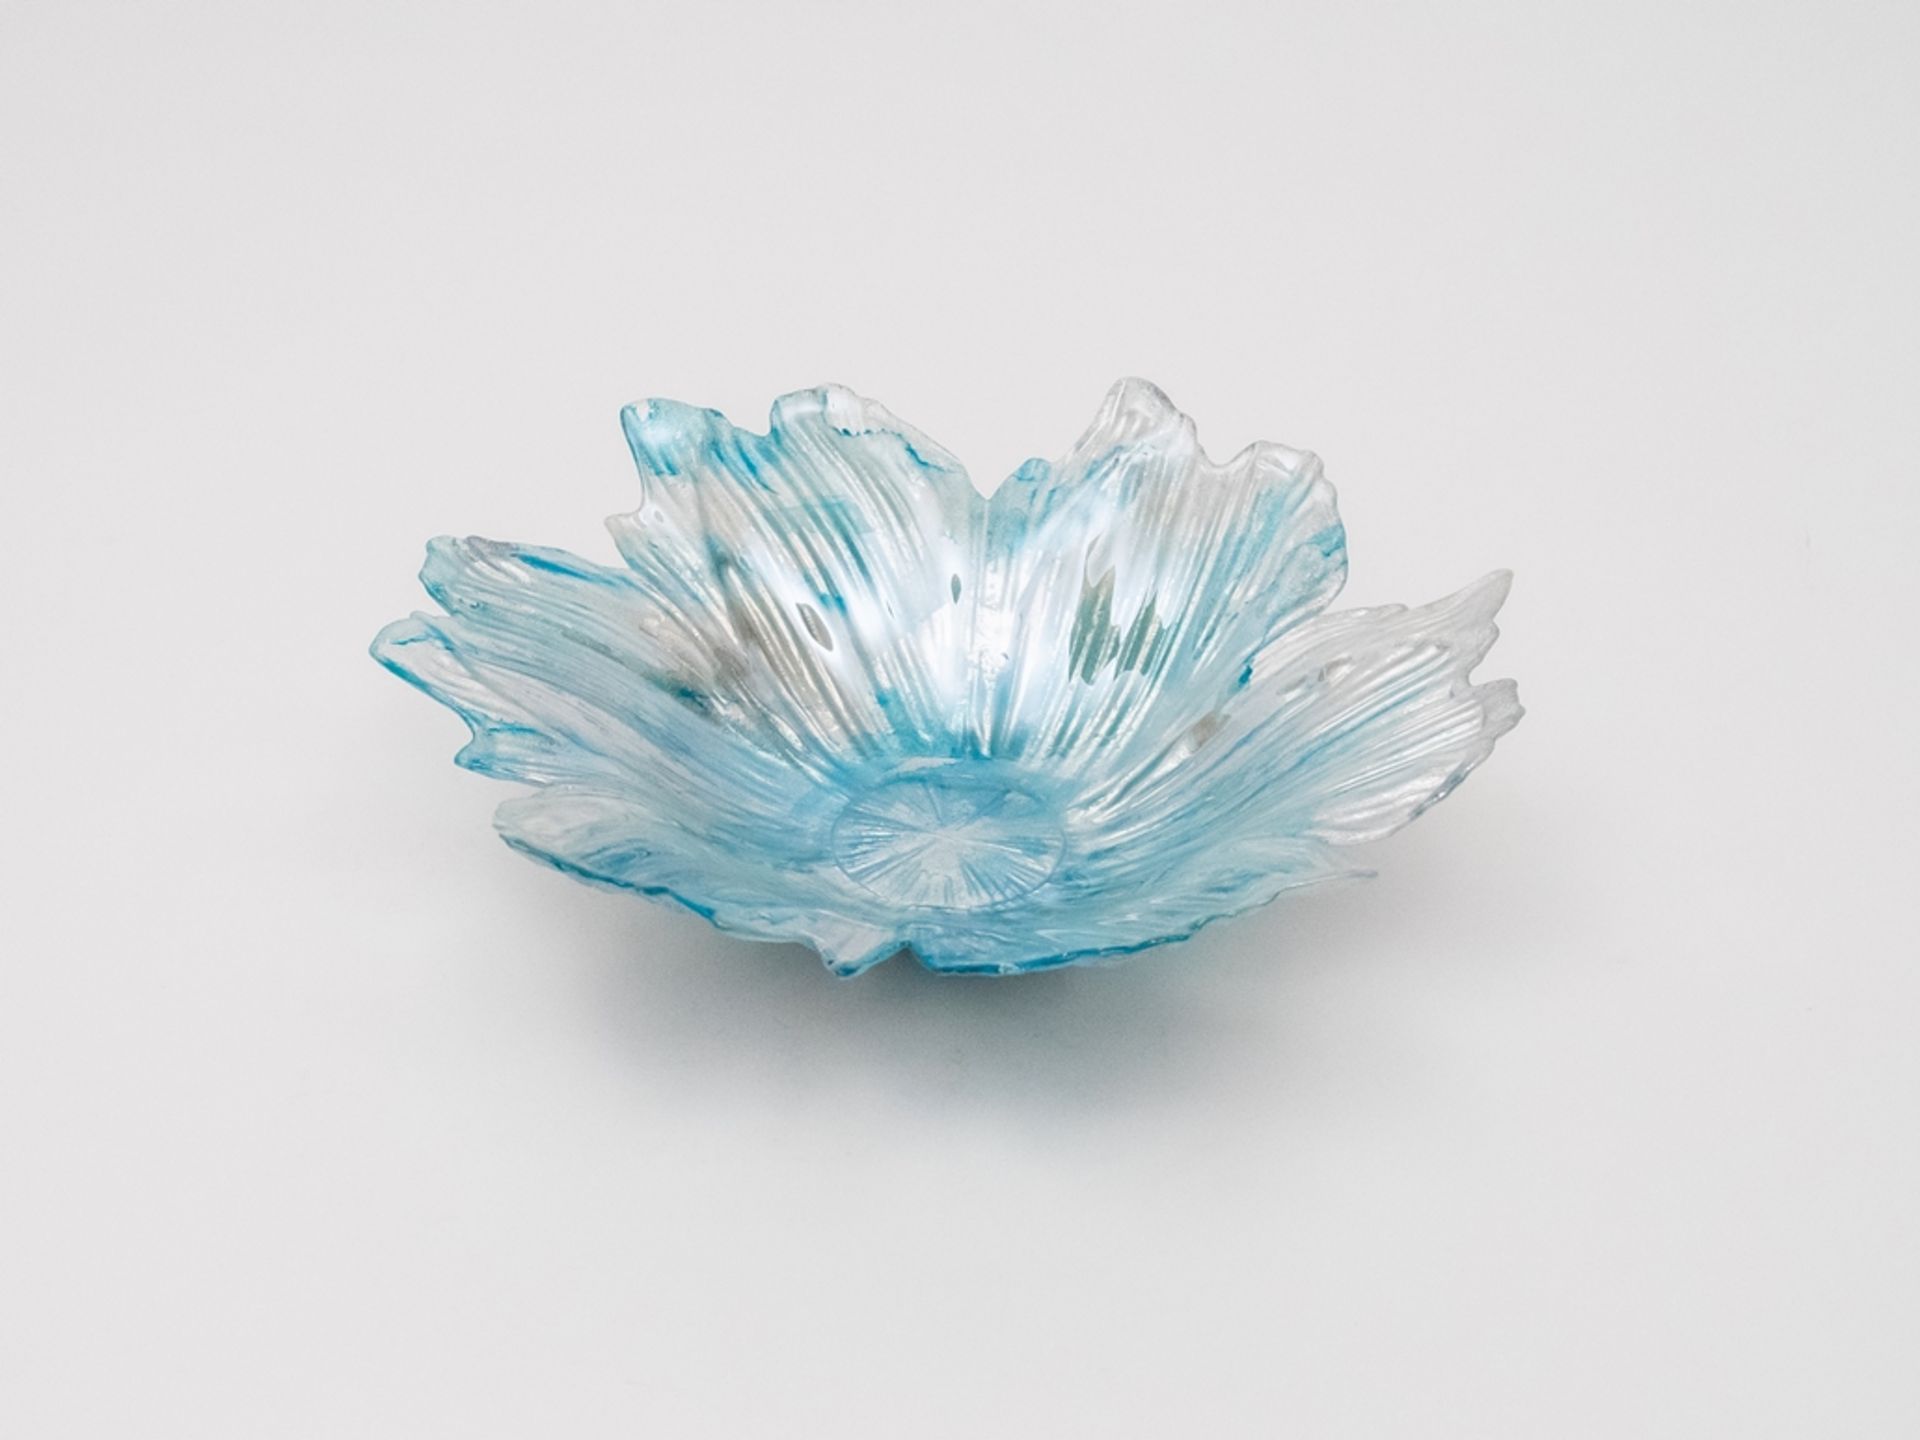 Blau-silber glitzernde Murano-Glasschale - Bild 4 aus 6